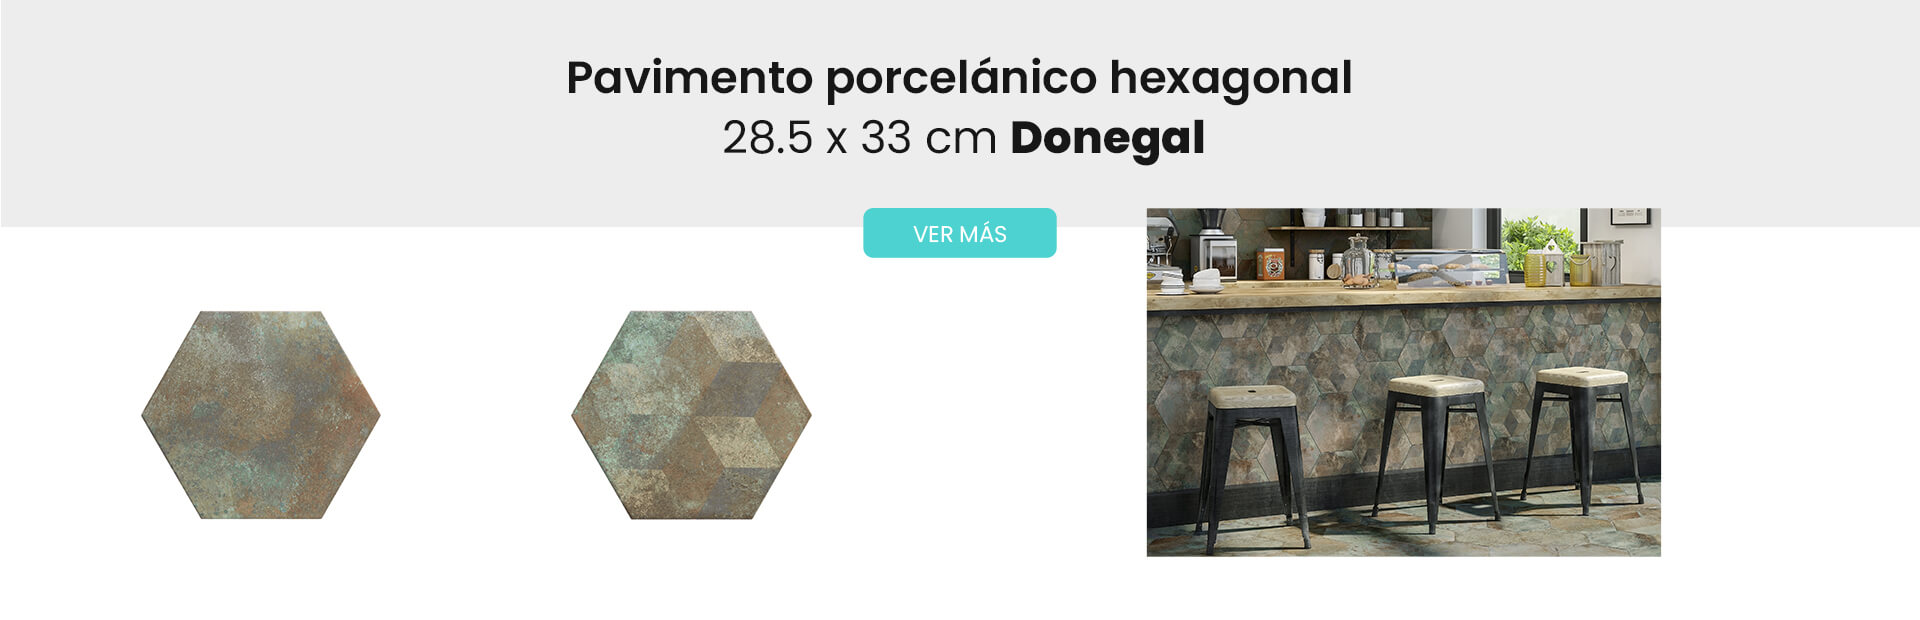 Pavimento hexagonal porcelánico Donegal Realonda.